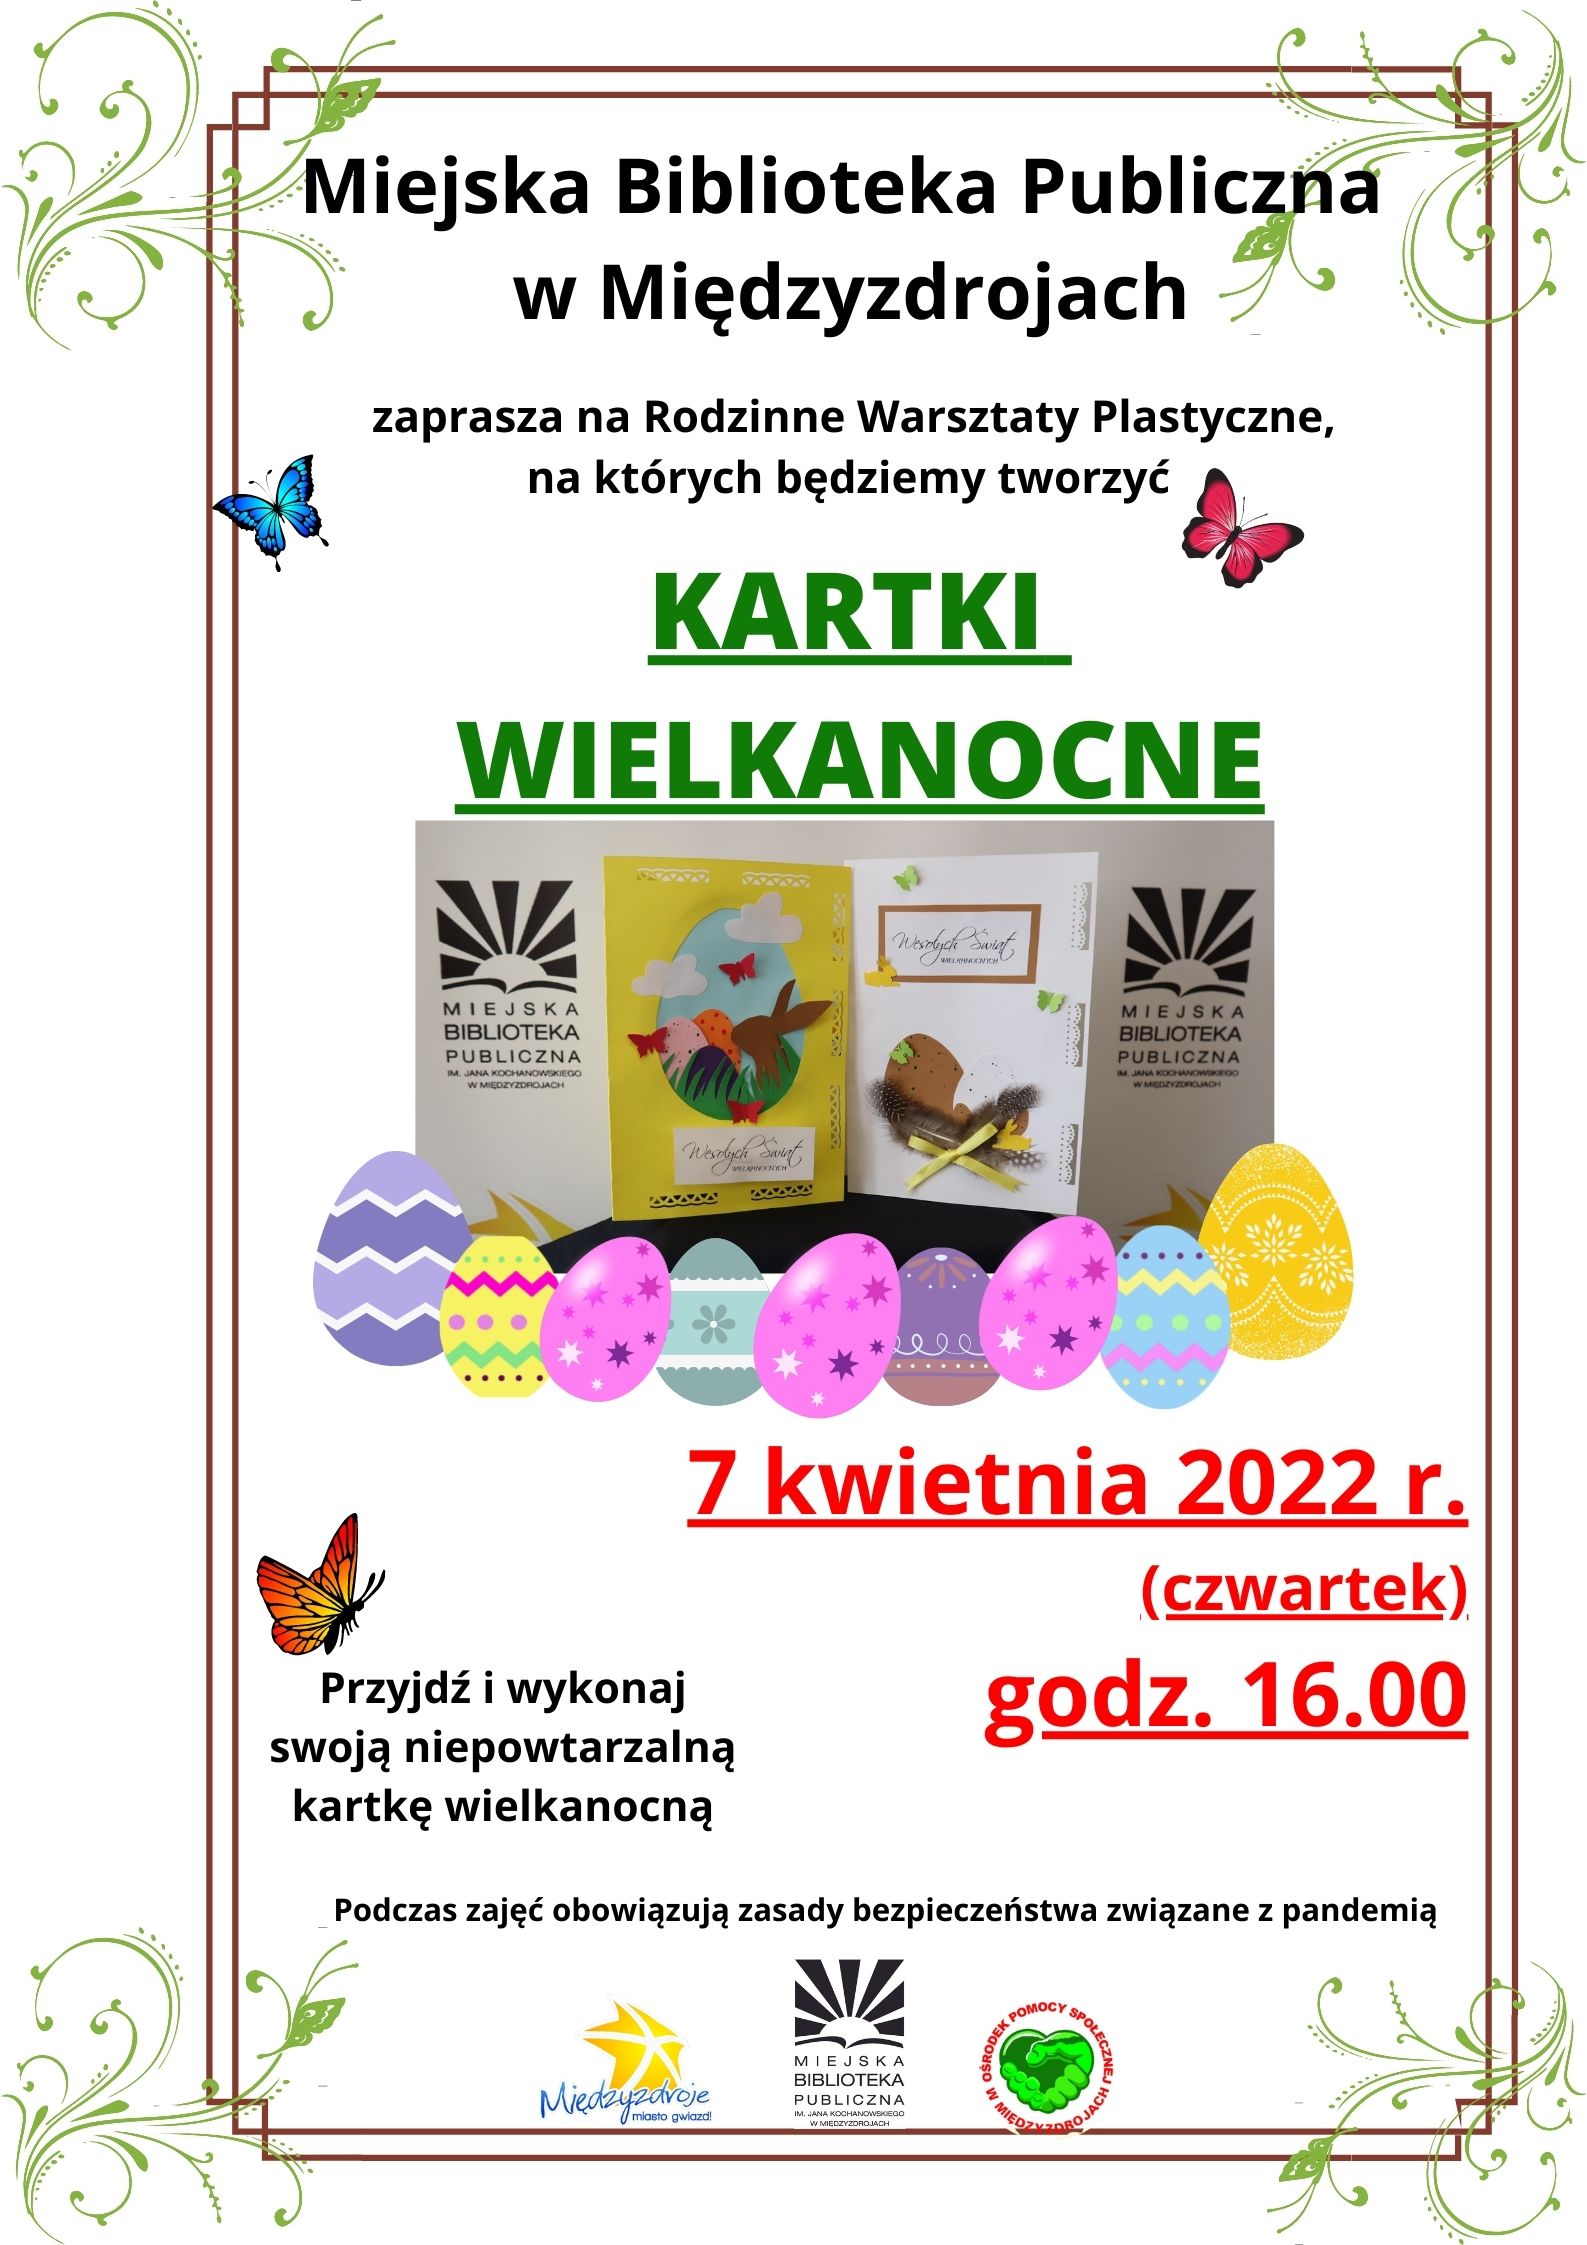 Rodzinne Warsztaty Plastyczne – kartki wielkanocne 7 kwietnia 2022 r.